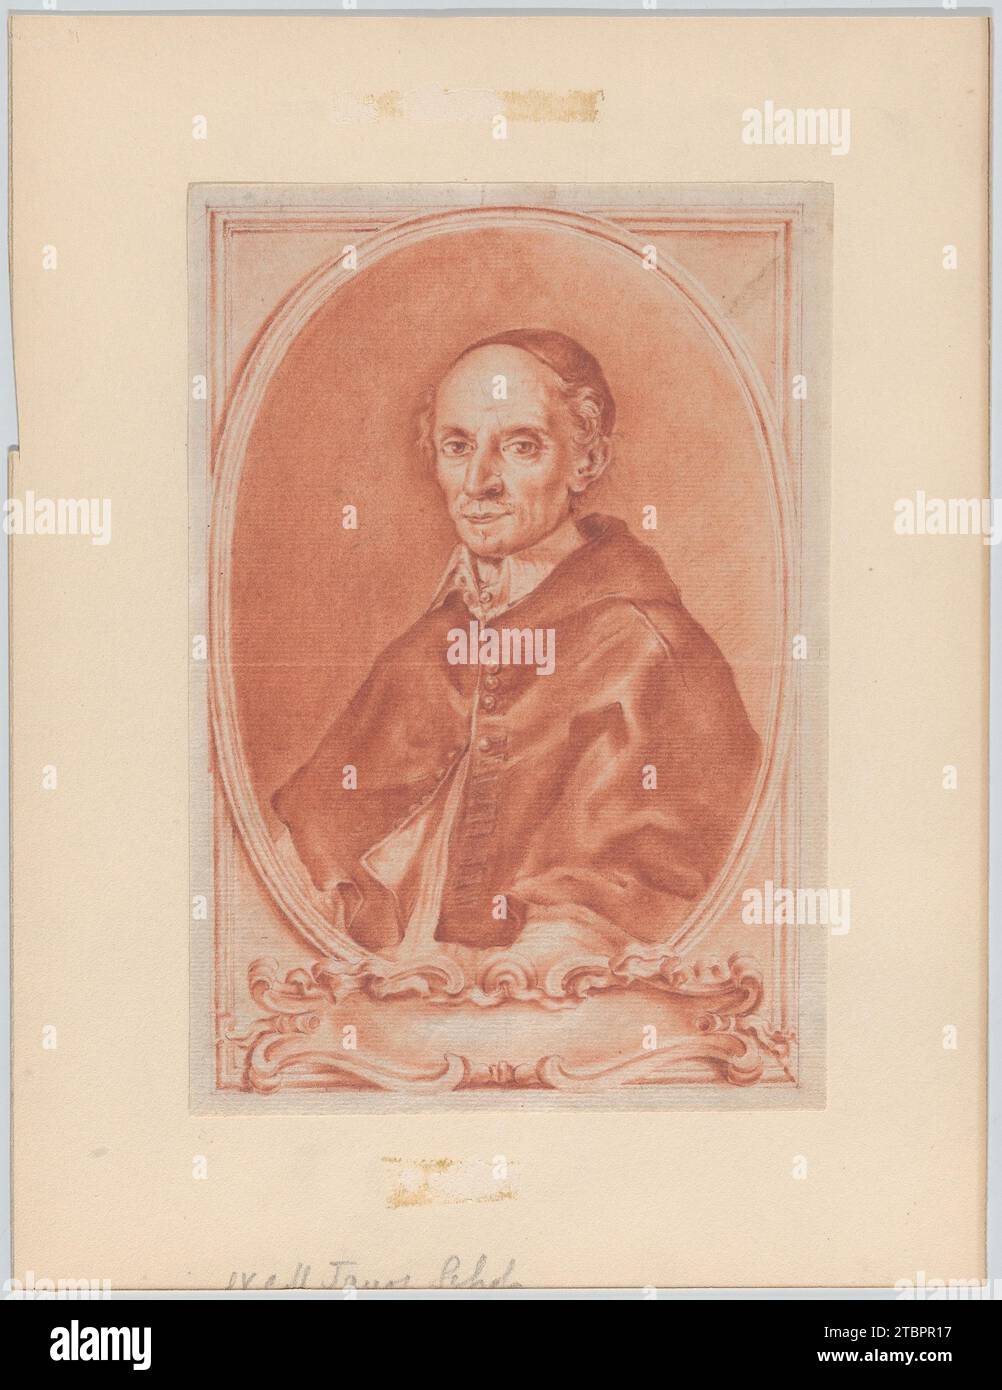 Ritratto di un cardinale in busto in un cartiglio (disegno per un frontespizio o frontespizio di un libro) 2015 di Anonimo, artista italiano, bolognese del XVIII secolo Foto Stock